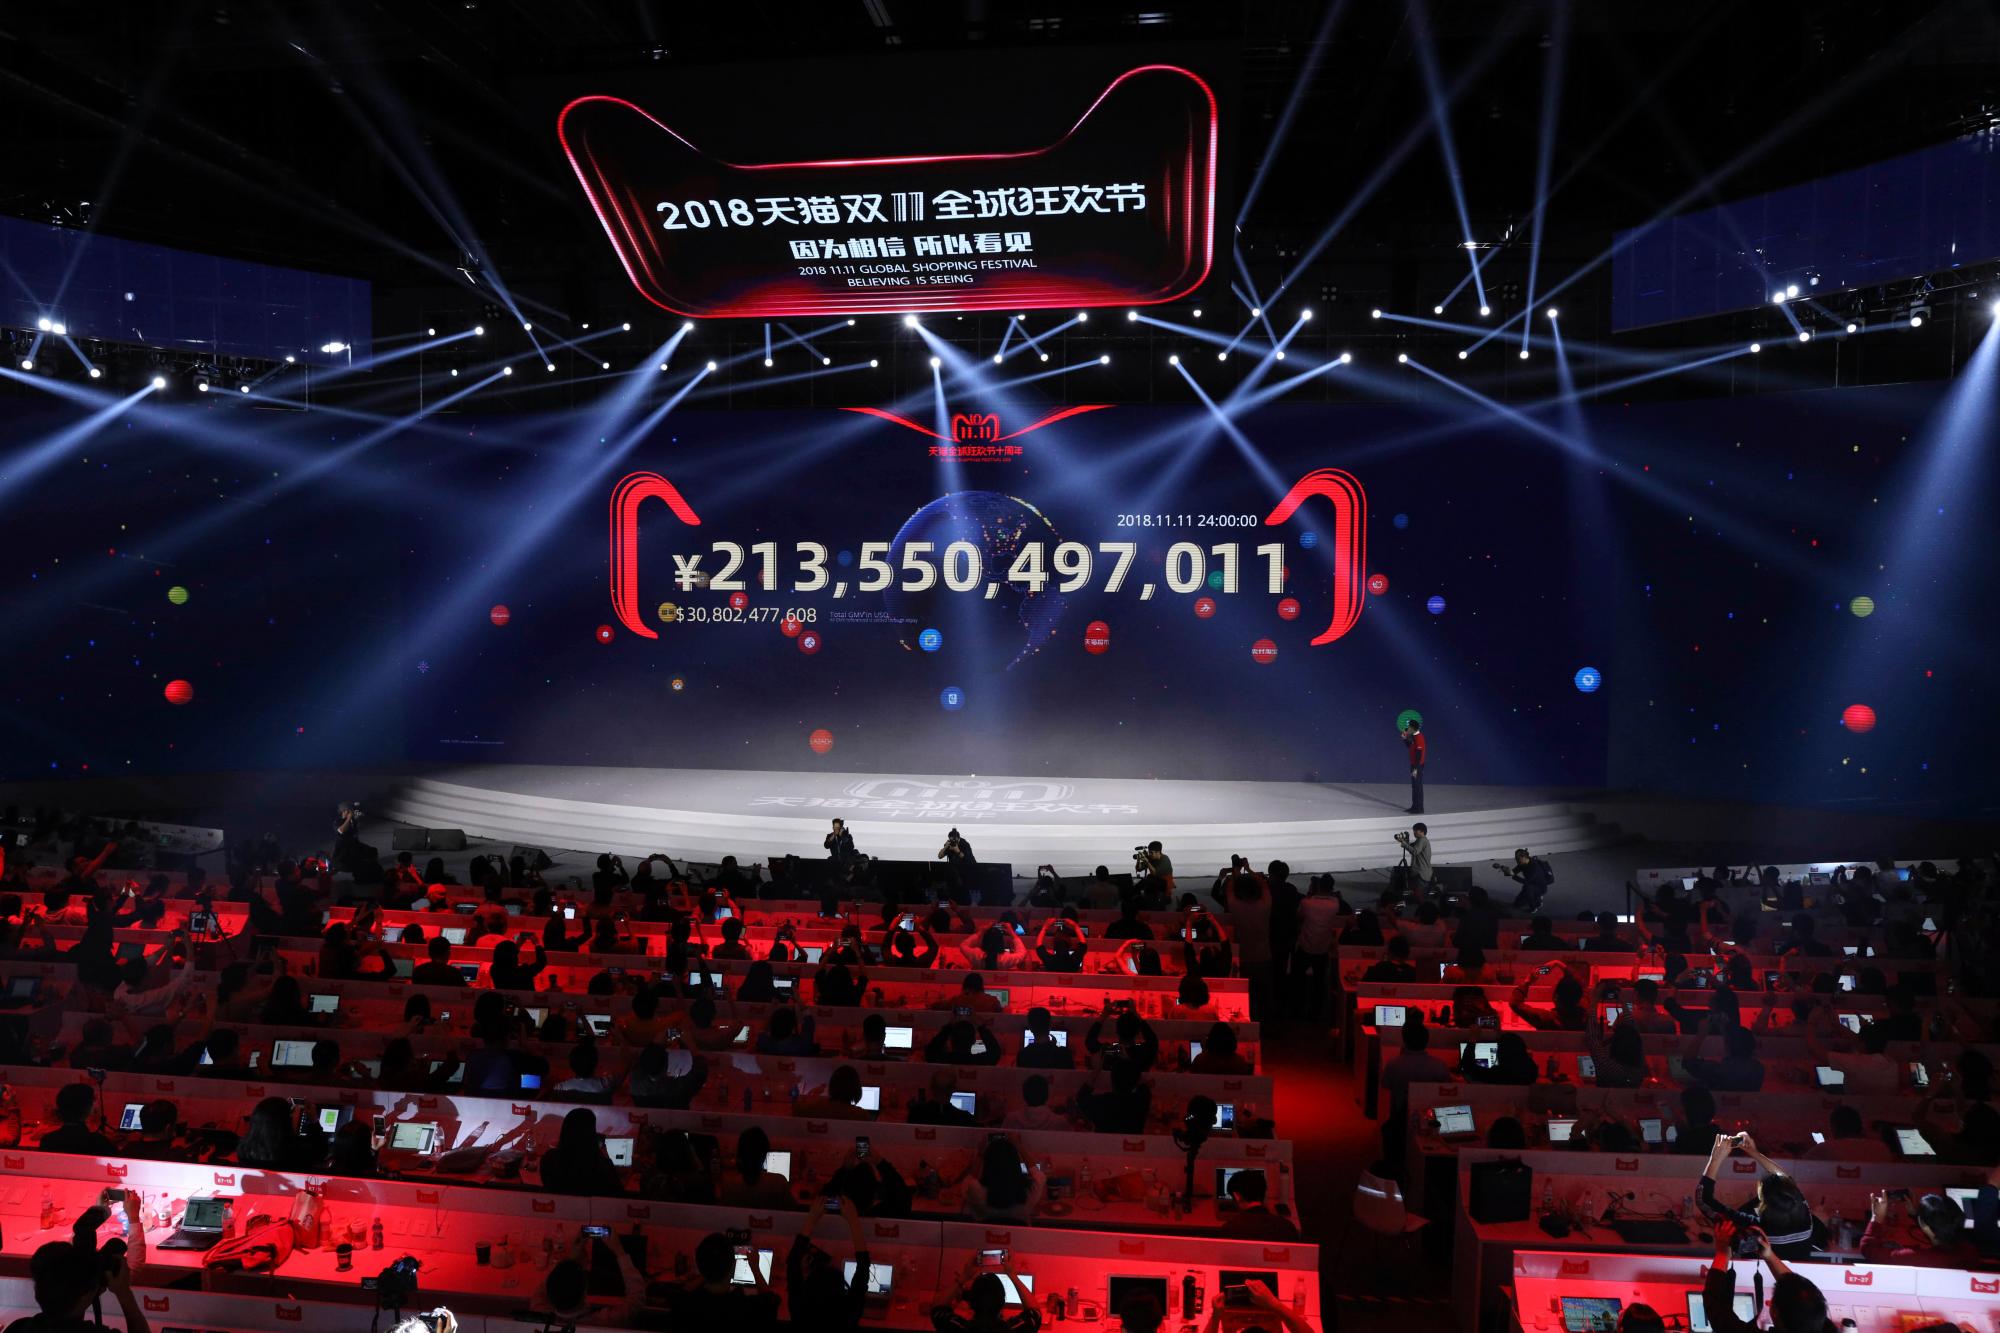 El conteo final para el 11.11 Global Shopping Festival de Alibaba, también conocido como el Día del Soltero (Singles Day), se muestra en su pantalla a la medianoche para establecer un nuevo récord de RMB213.5 mil millones o más de US $ 30 mil millones en Shanghai, China, lunes 12 de noviembre de 2018 El gasto excesivo ha eclipsado durante años al Cyber ??Monday en los EE. UU. Por compras en línea realizadas en un solo día. La cuenta de este año rompe con los pronósticos sombríos sobre la segunda economía más grande del mundo, que está luchando con una guerra arancelaria con los EE. UU., Una caída del mercado de valores y una desaceleración del crecimiento general.